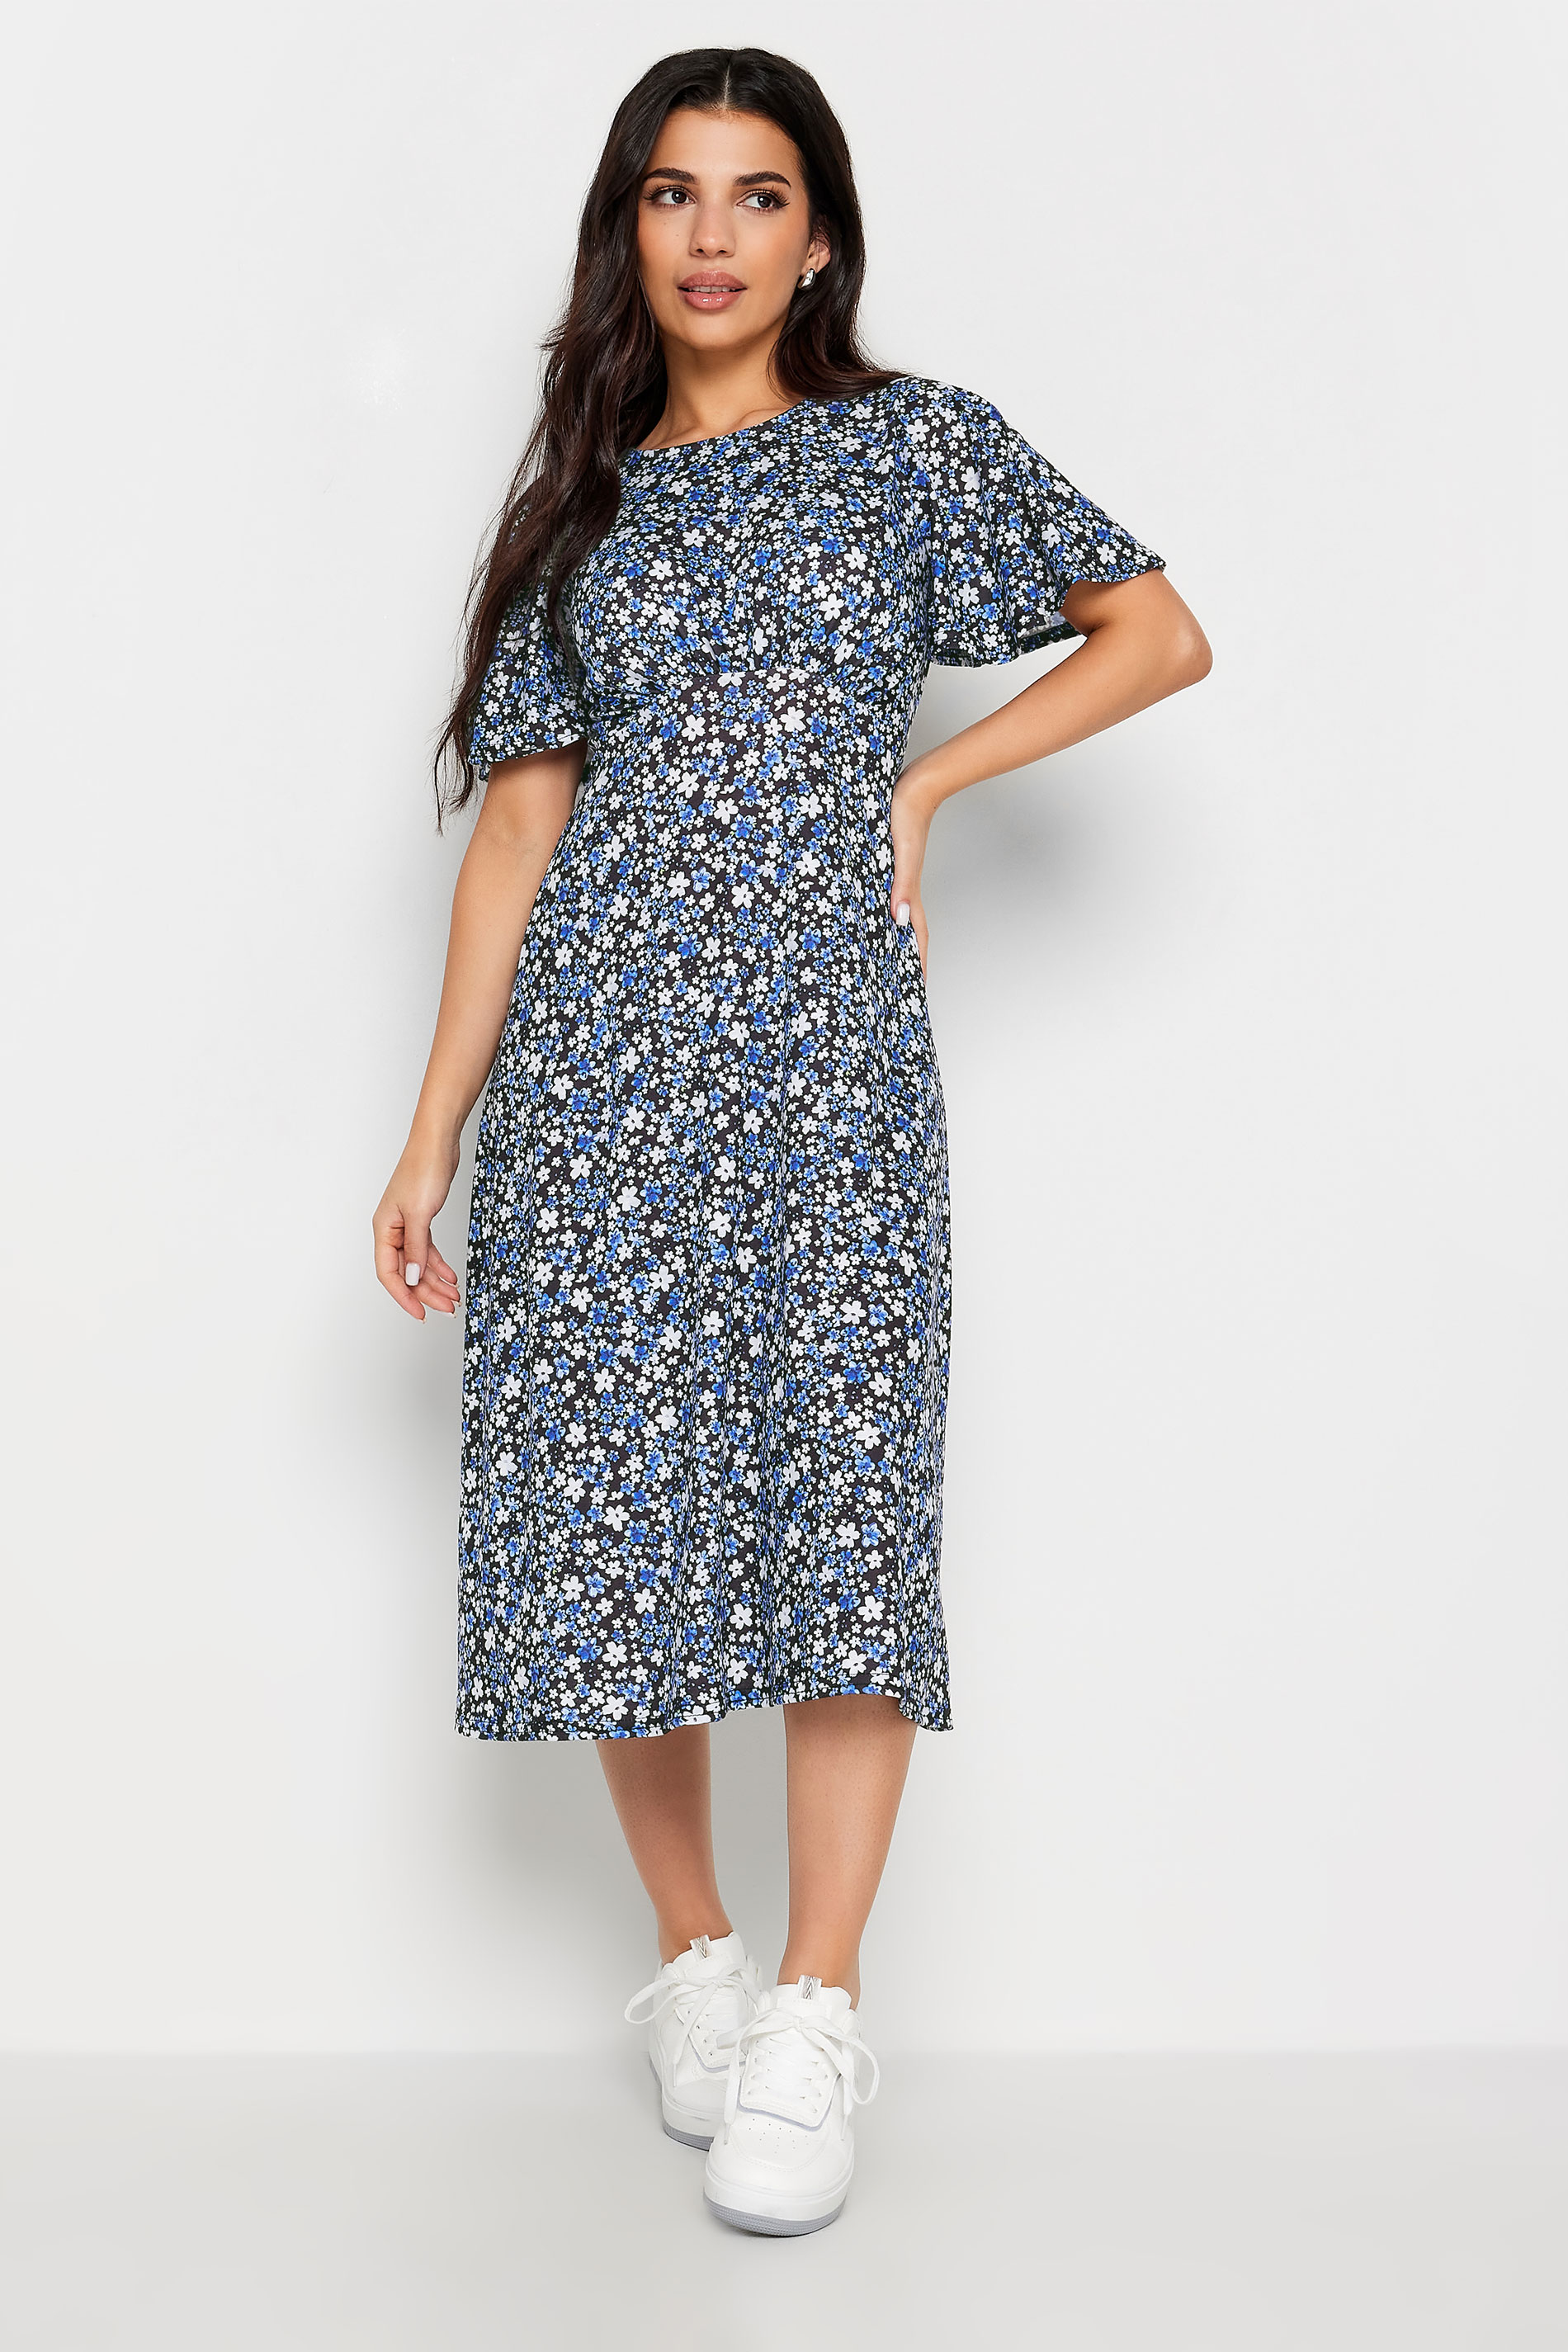 PixieGirl Petite Womens Blue & Black Ditsy Floral Print Midi Dress | PixieGirl 1